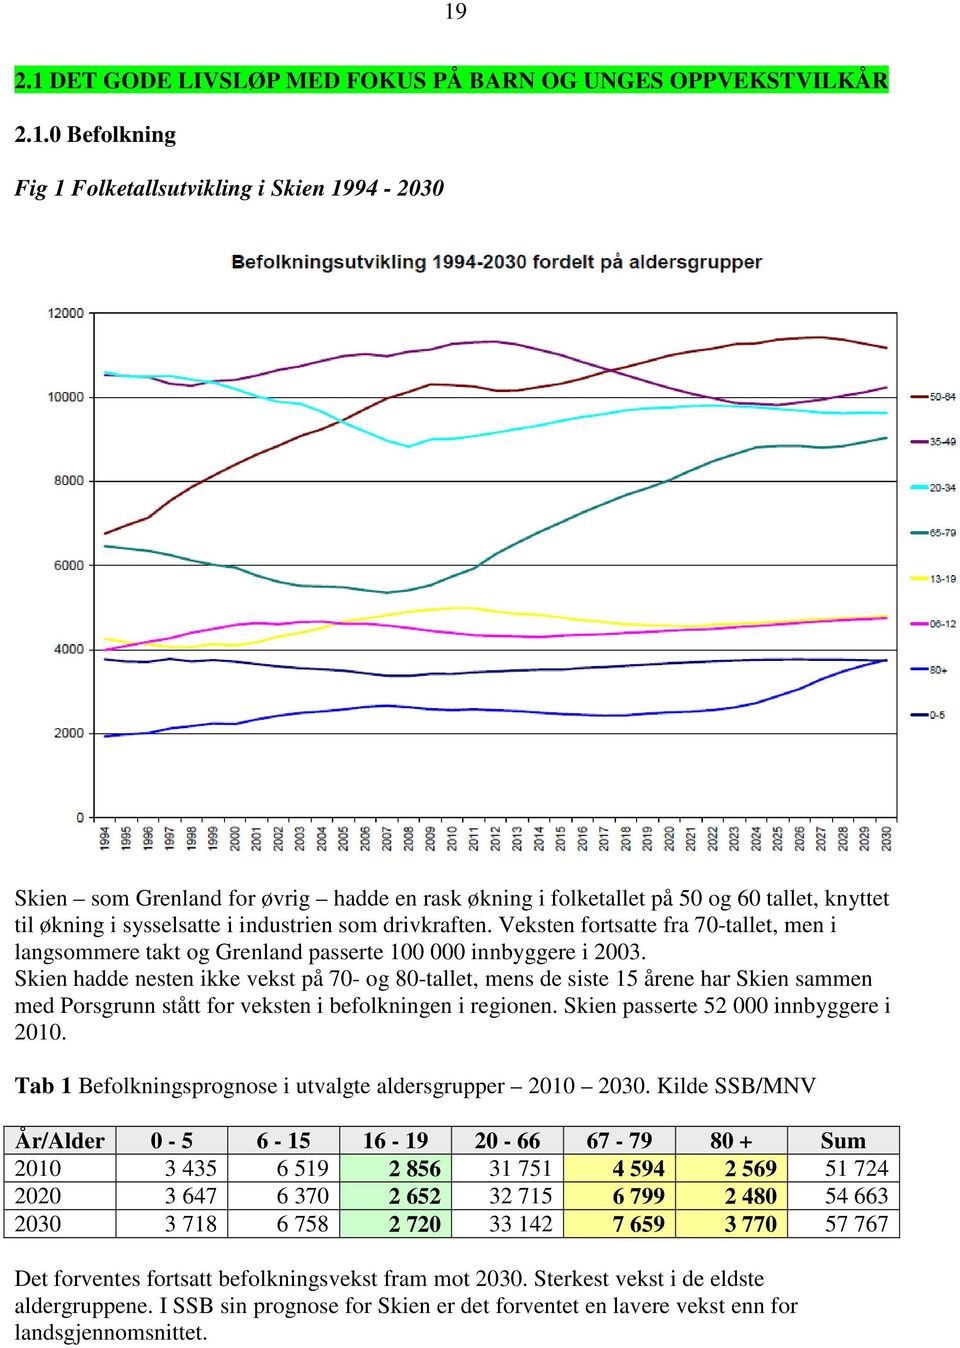 Skien hadde nesten ikke vekst på 70- g 80-tallet, mens de siste 15 årene har Skien sammen med Prsgrunn stått fr veksten i beflkningen i reginen. Skien passerte 52 000 innbyggere i 2010.